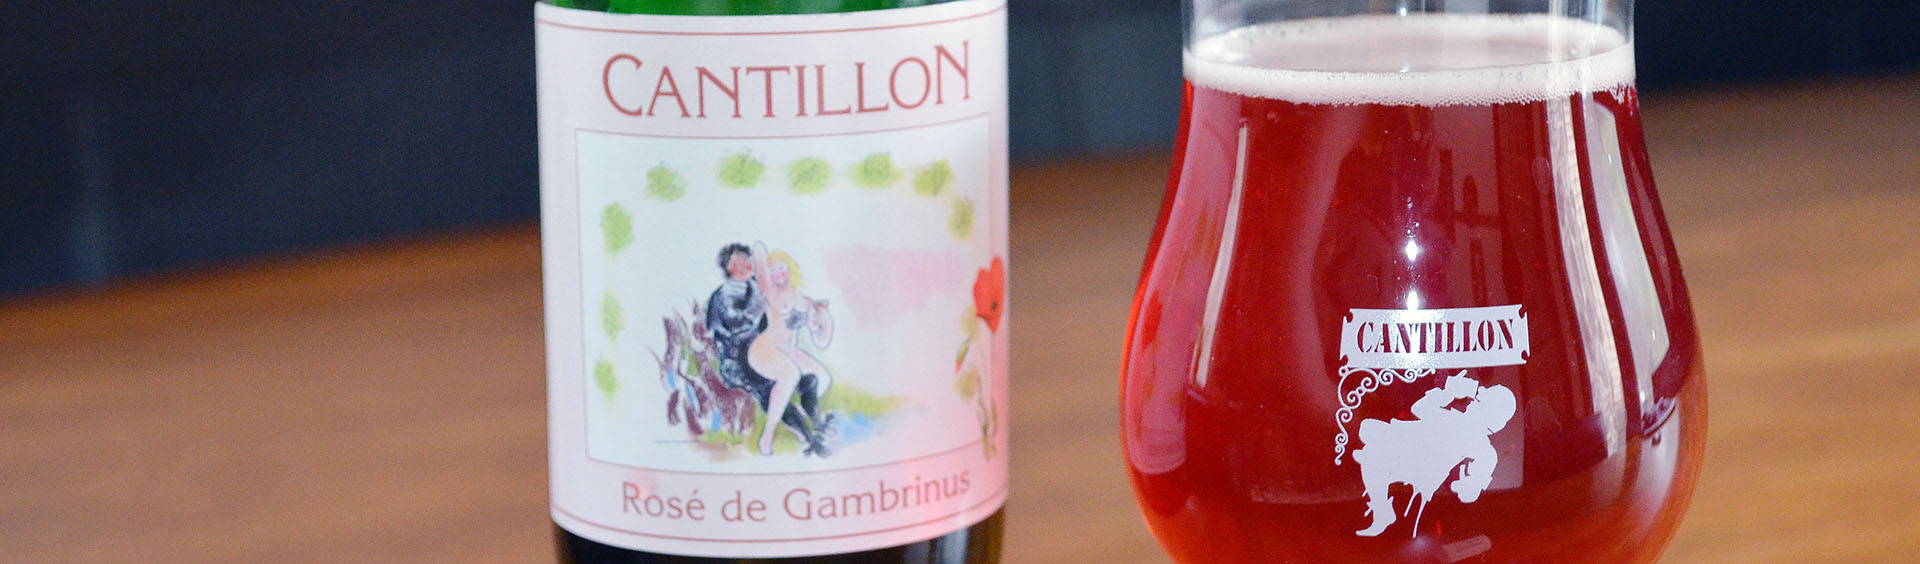 Cantillon Rose de Gambrinus Header